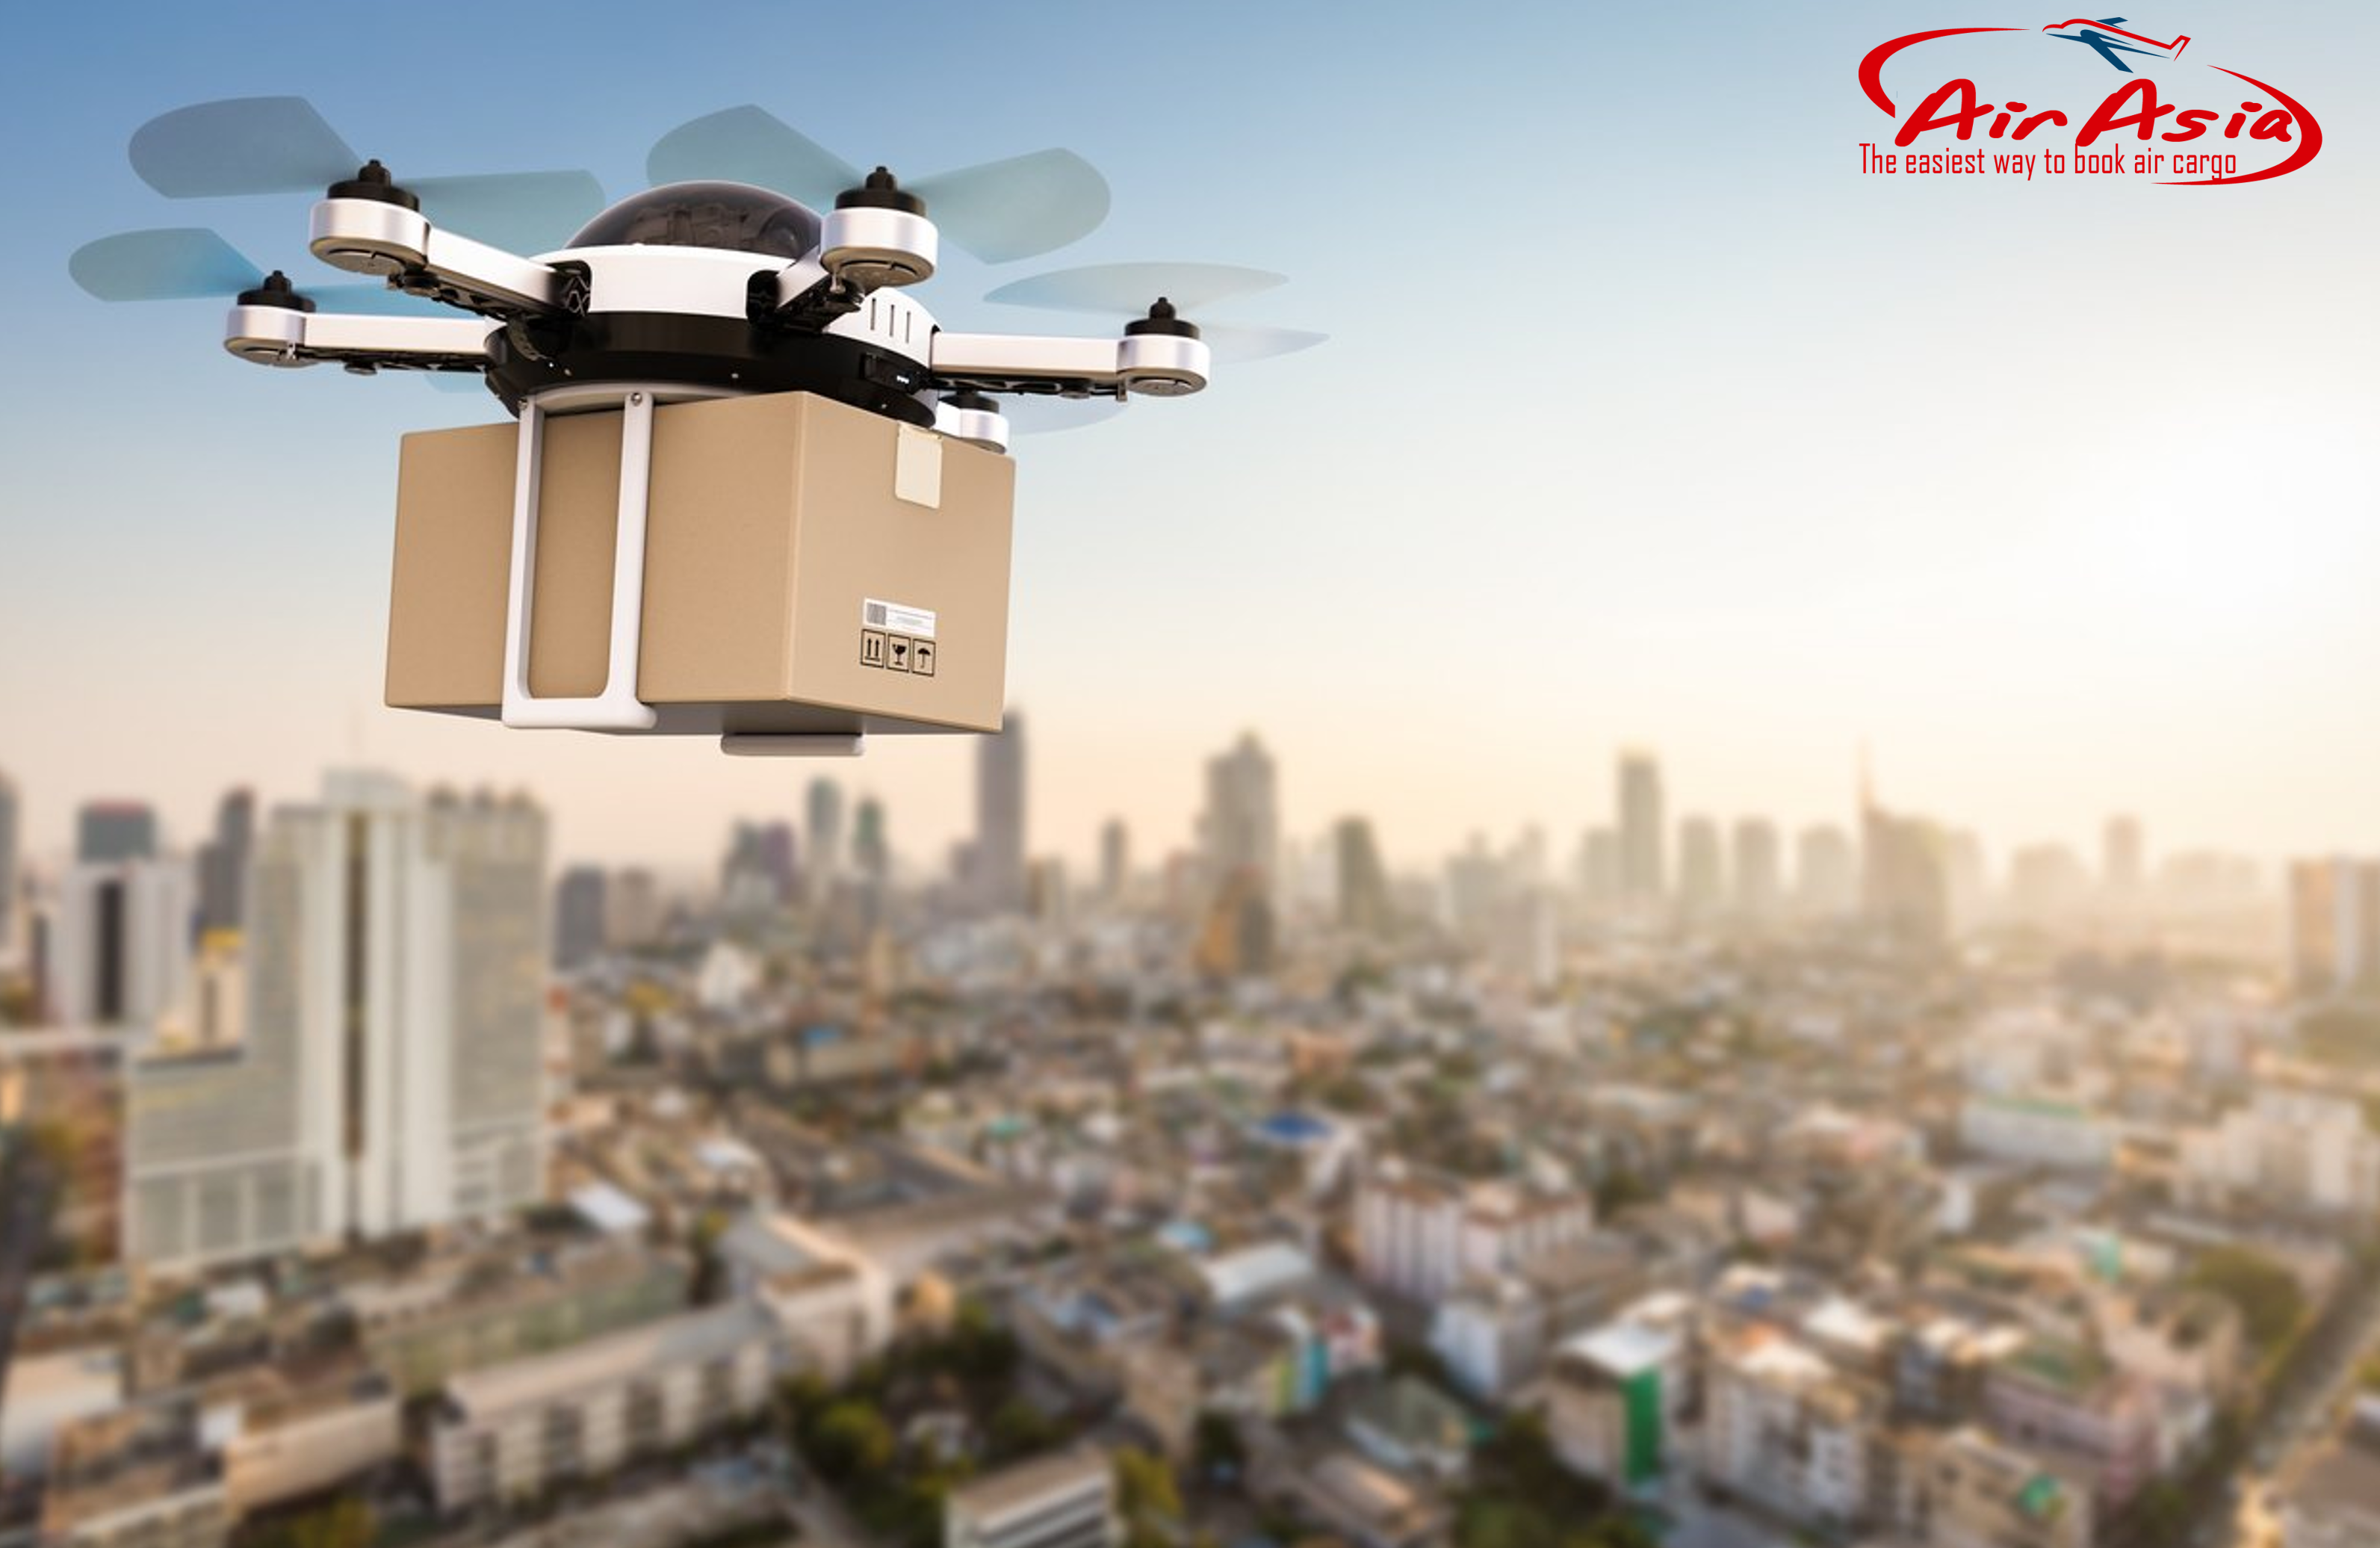 Drone Delivery - công nghệ giao hàng không người lái hiện đại